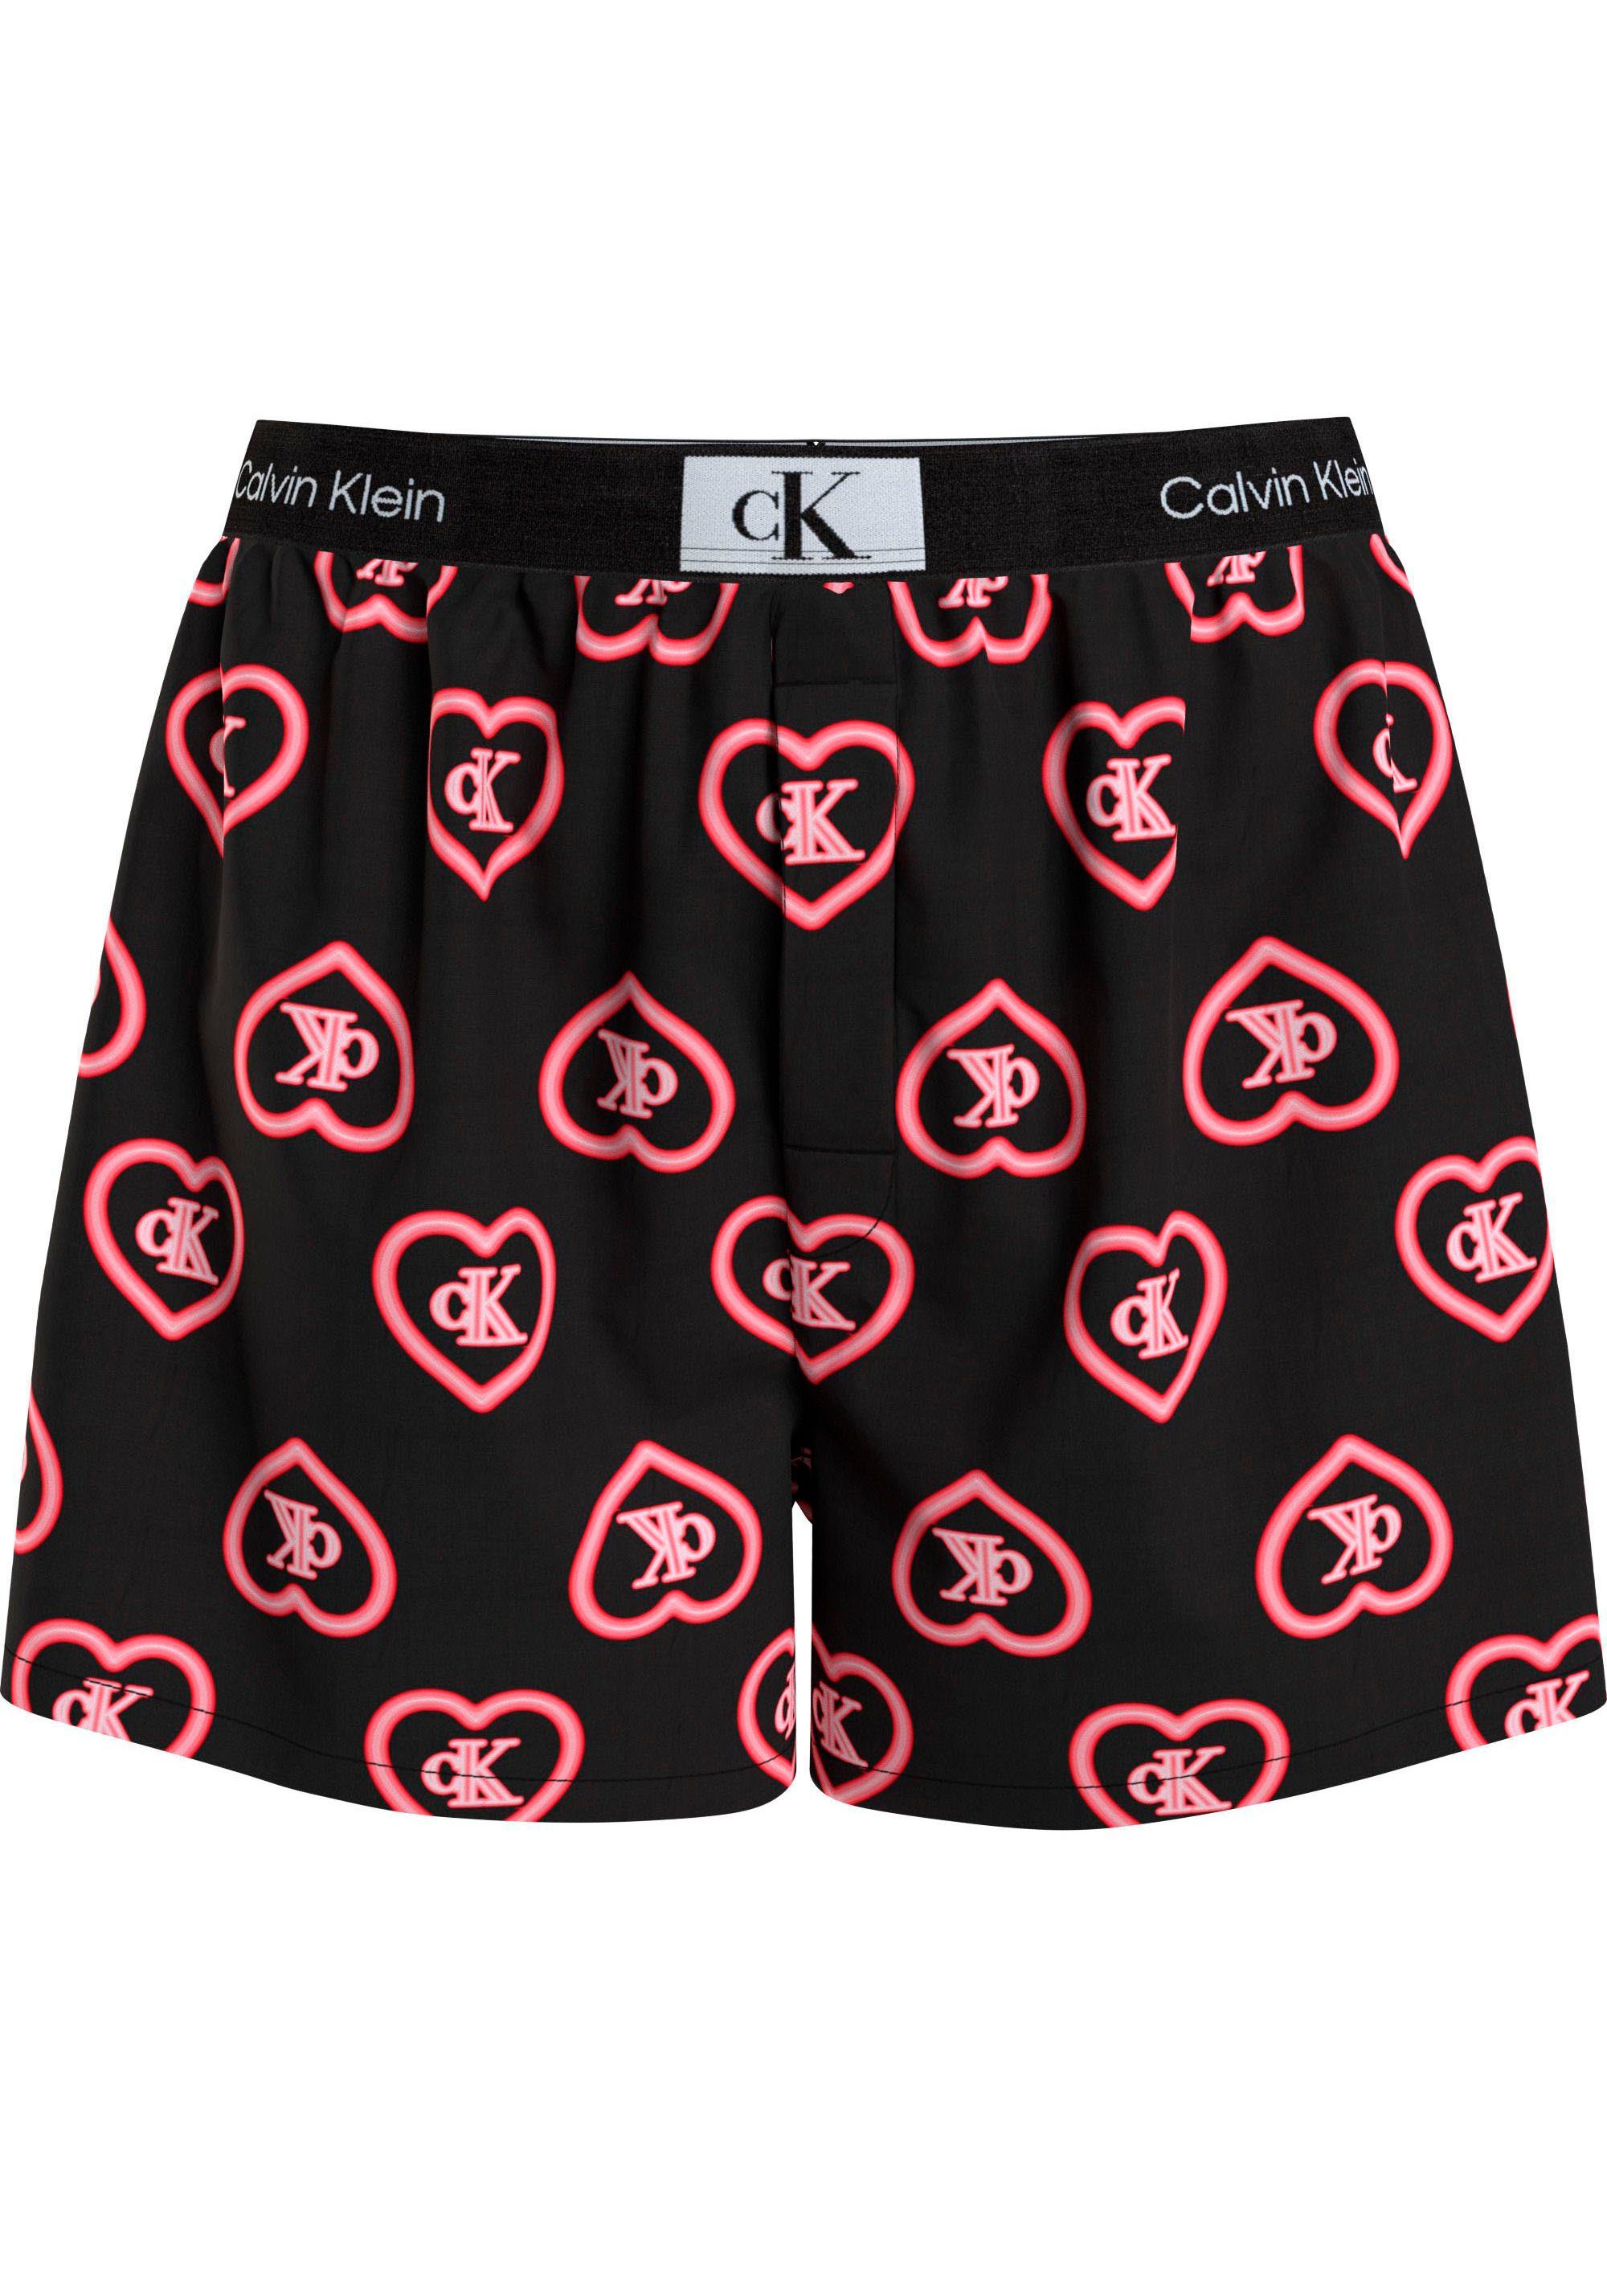 Underwear Calvin mit BOXER Print Pyjamashorts Klein TRADITIONAL